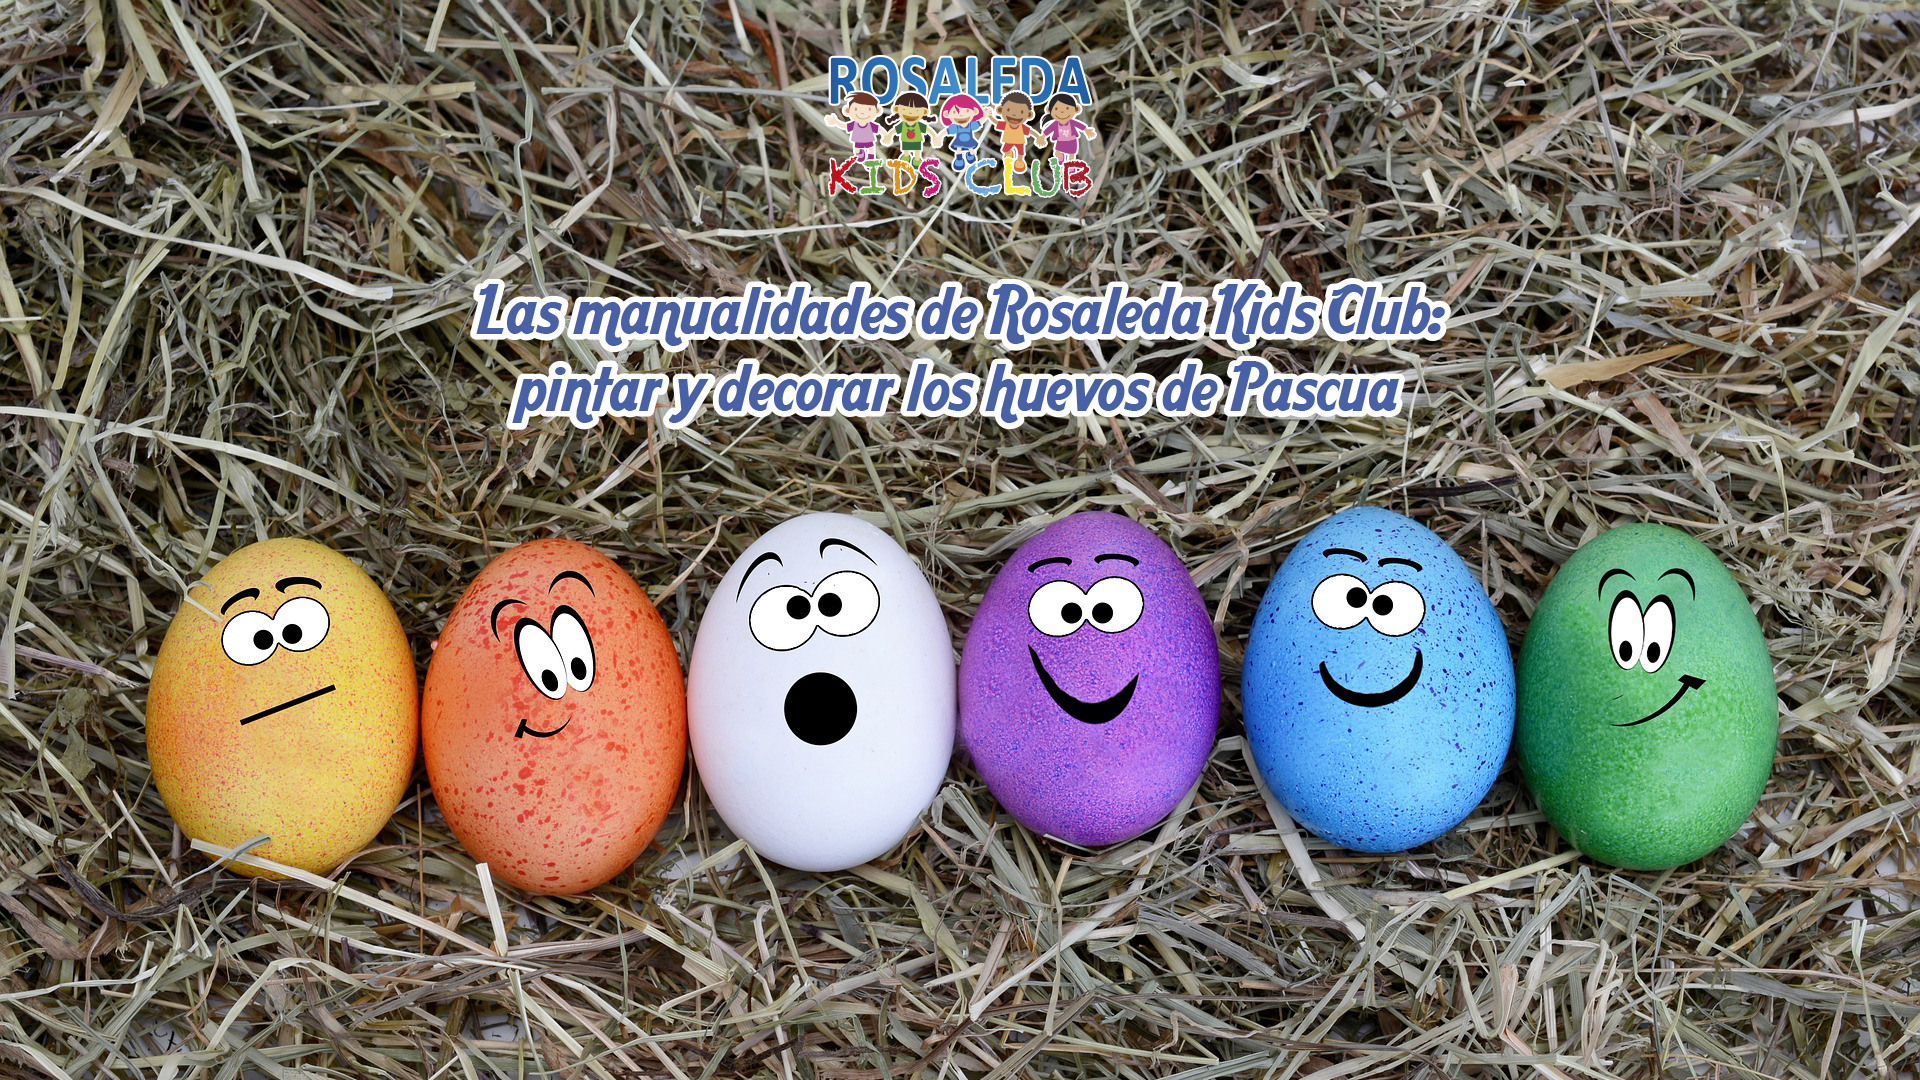 Las manualidades de Rosaleda Kids Club: pintar y decorar los huevos de  Pascua - Centro Comercial Rosaleda